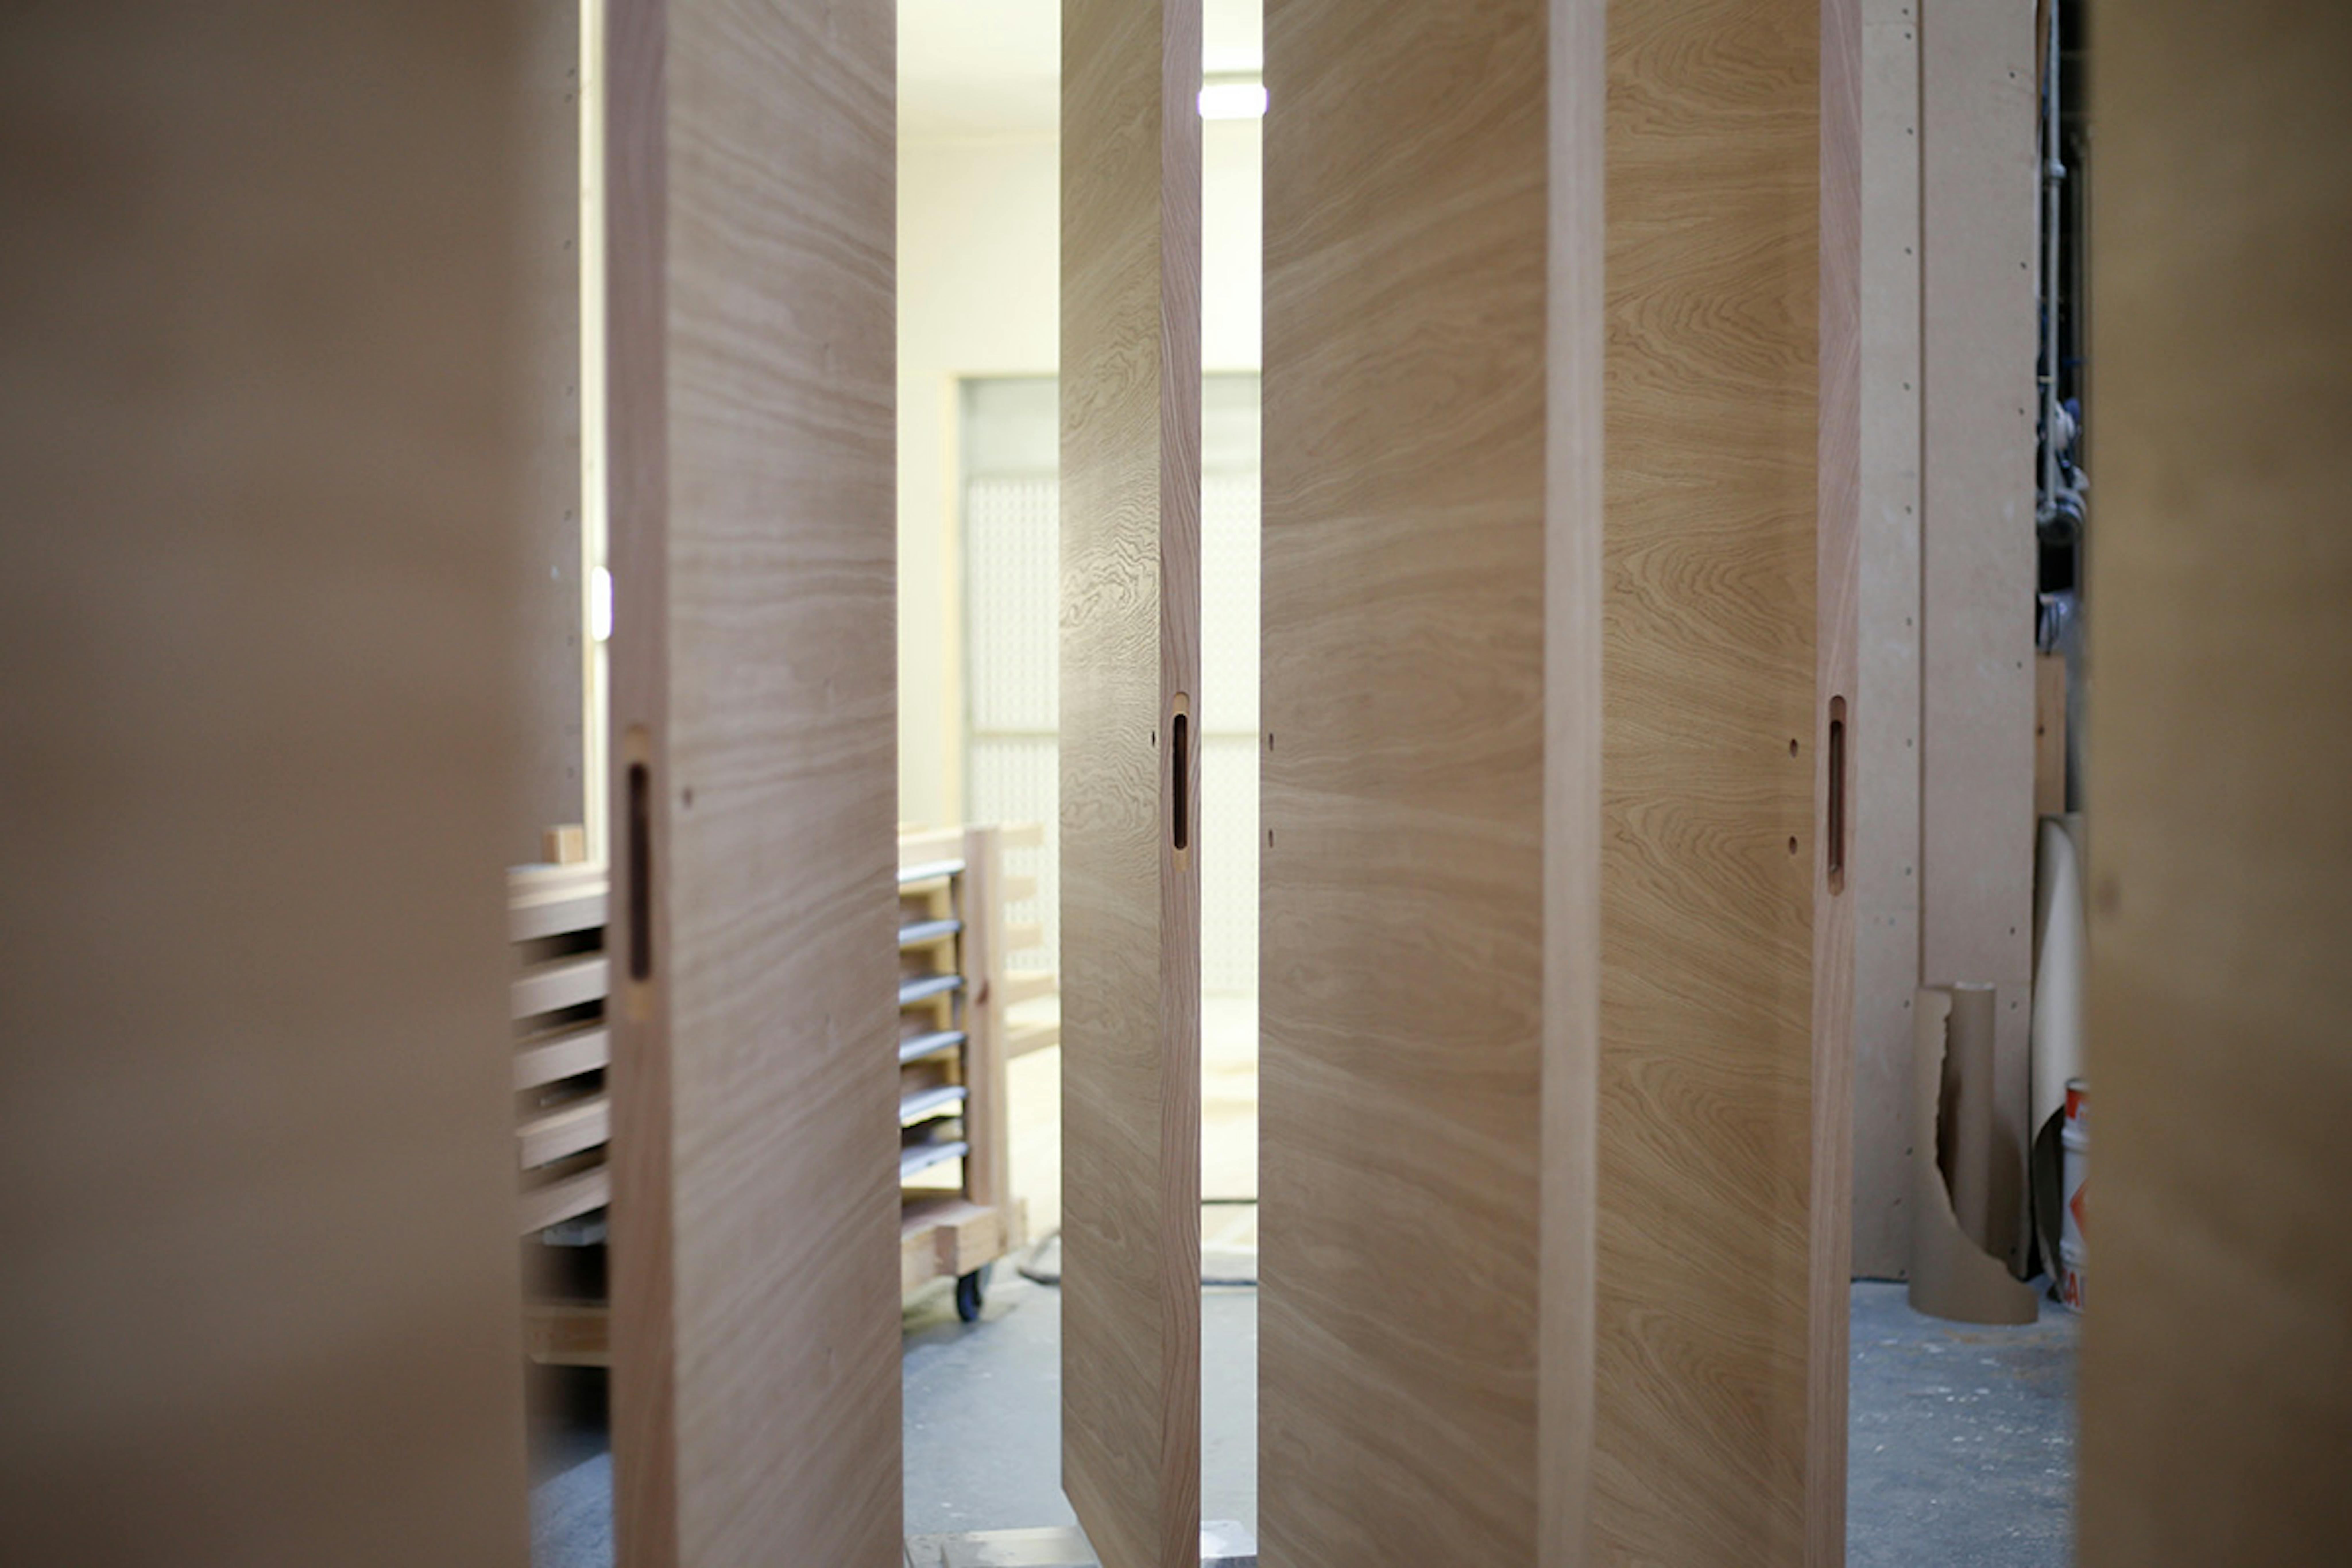 How handmade doors set your project apart